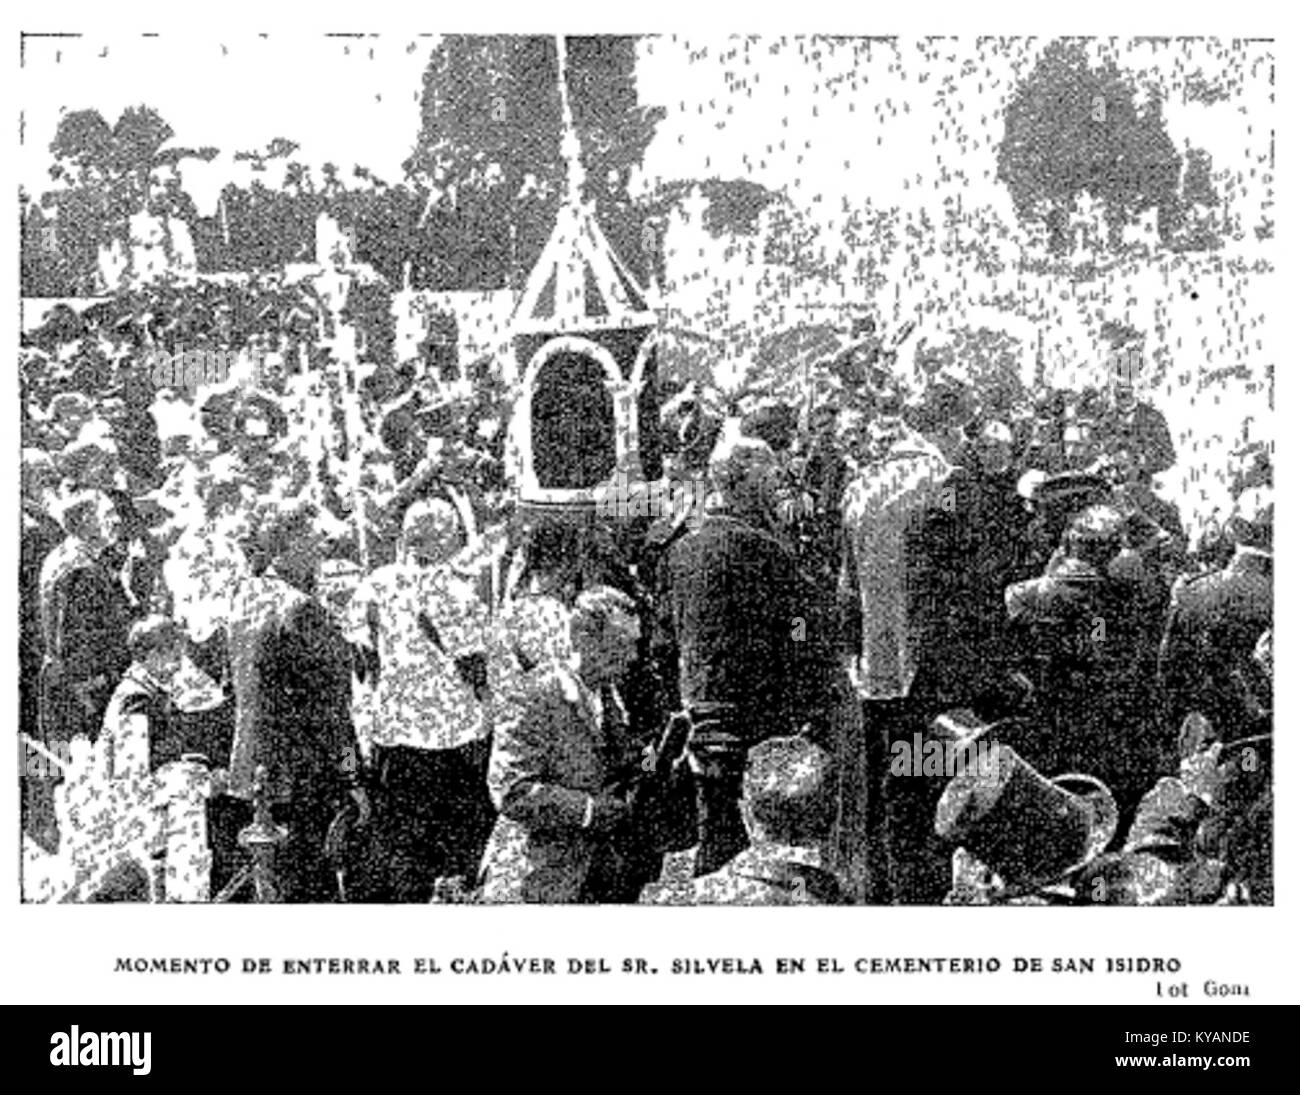 Momento de enterrar el cadáver del Sr. Silvela en el cementerio de San Isidro, foto de Goñi, ABC, 01-06-1905 Stock Photo